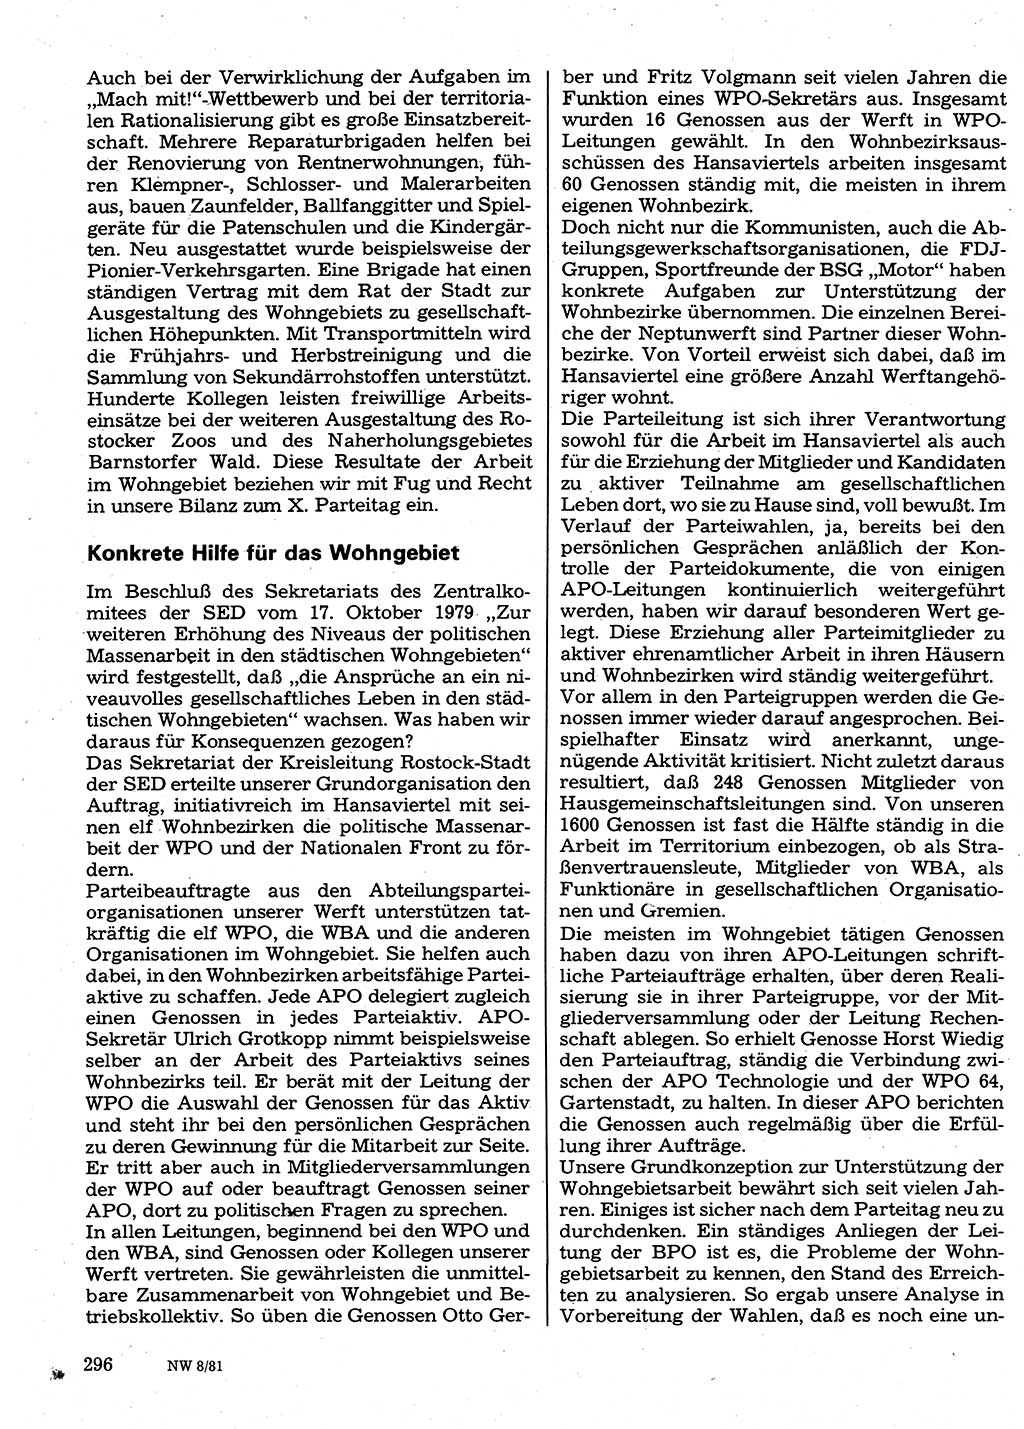 Neuer Weg (NW), Organ des Zentralkomitees (ZK) der SED (Sozialistische Einheitspartei Deutschlands) für Fragen des Parteilebens, 36. Jahrgang [Deutsche Demokratische Republik (DDR)] 1981, Seite 296 (NW ZK SED DDR 1981, S. 296)